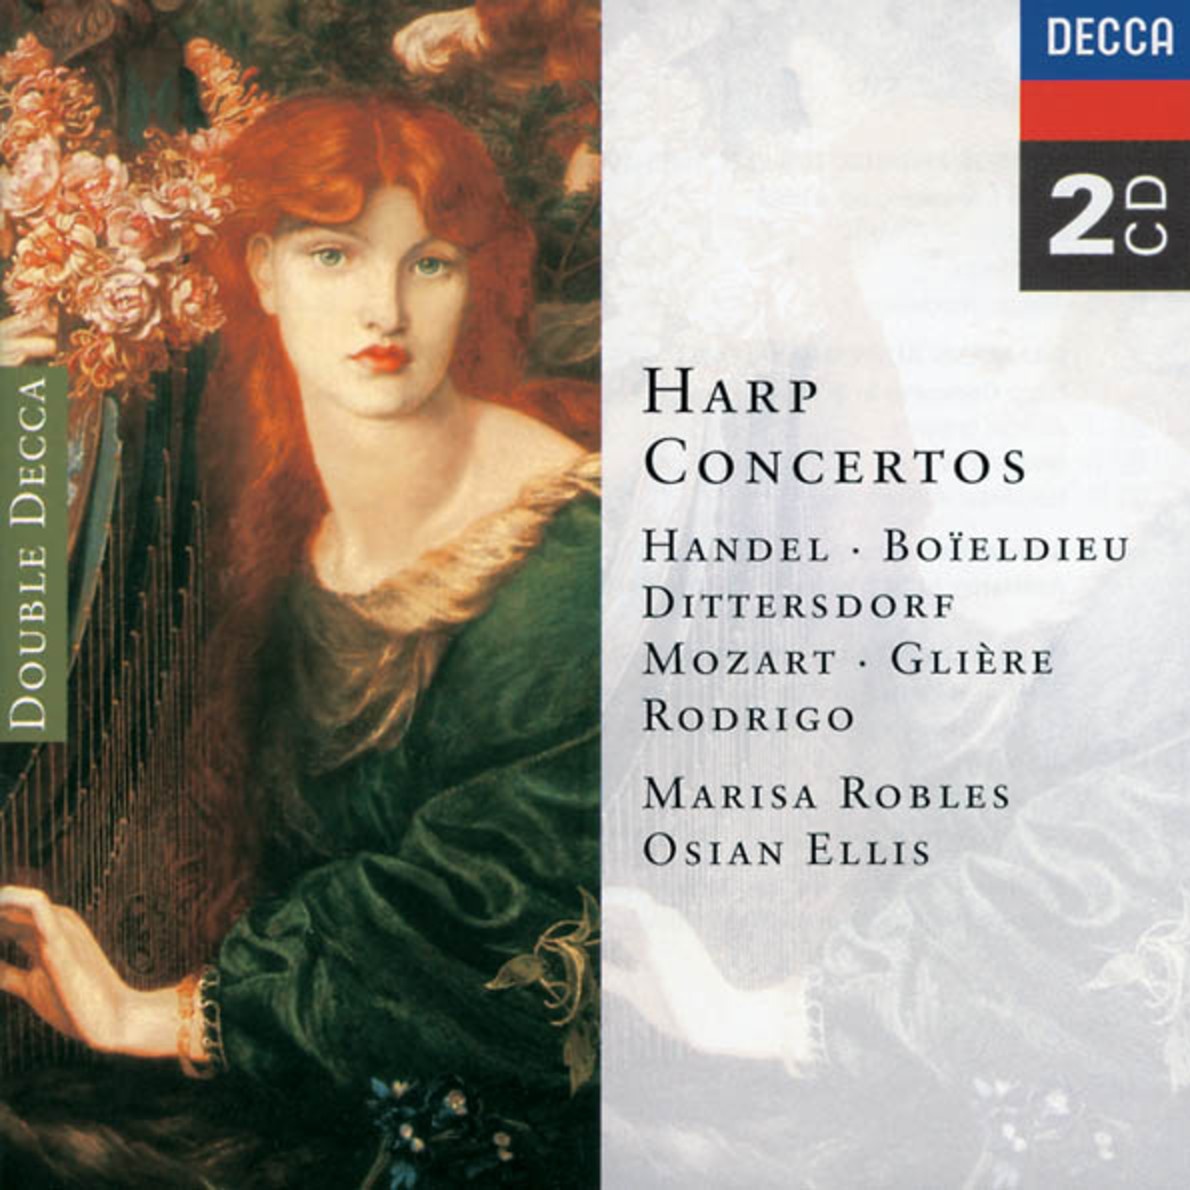 Harp Concerto in A major:1. Allegro molto